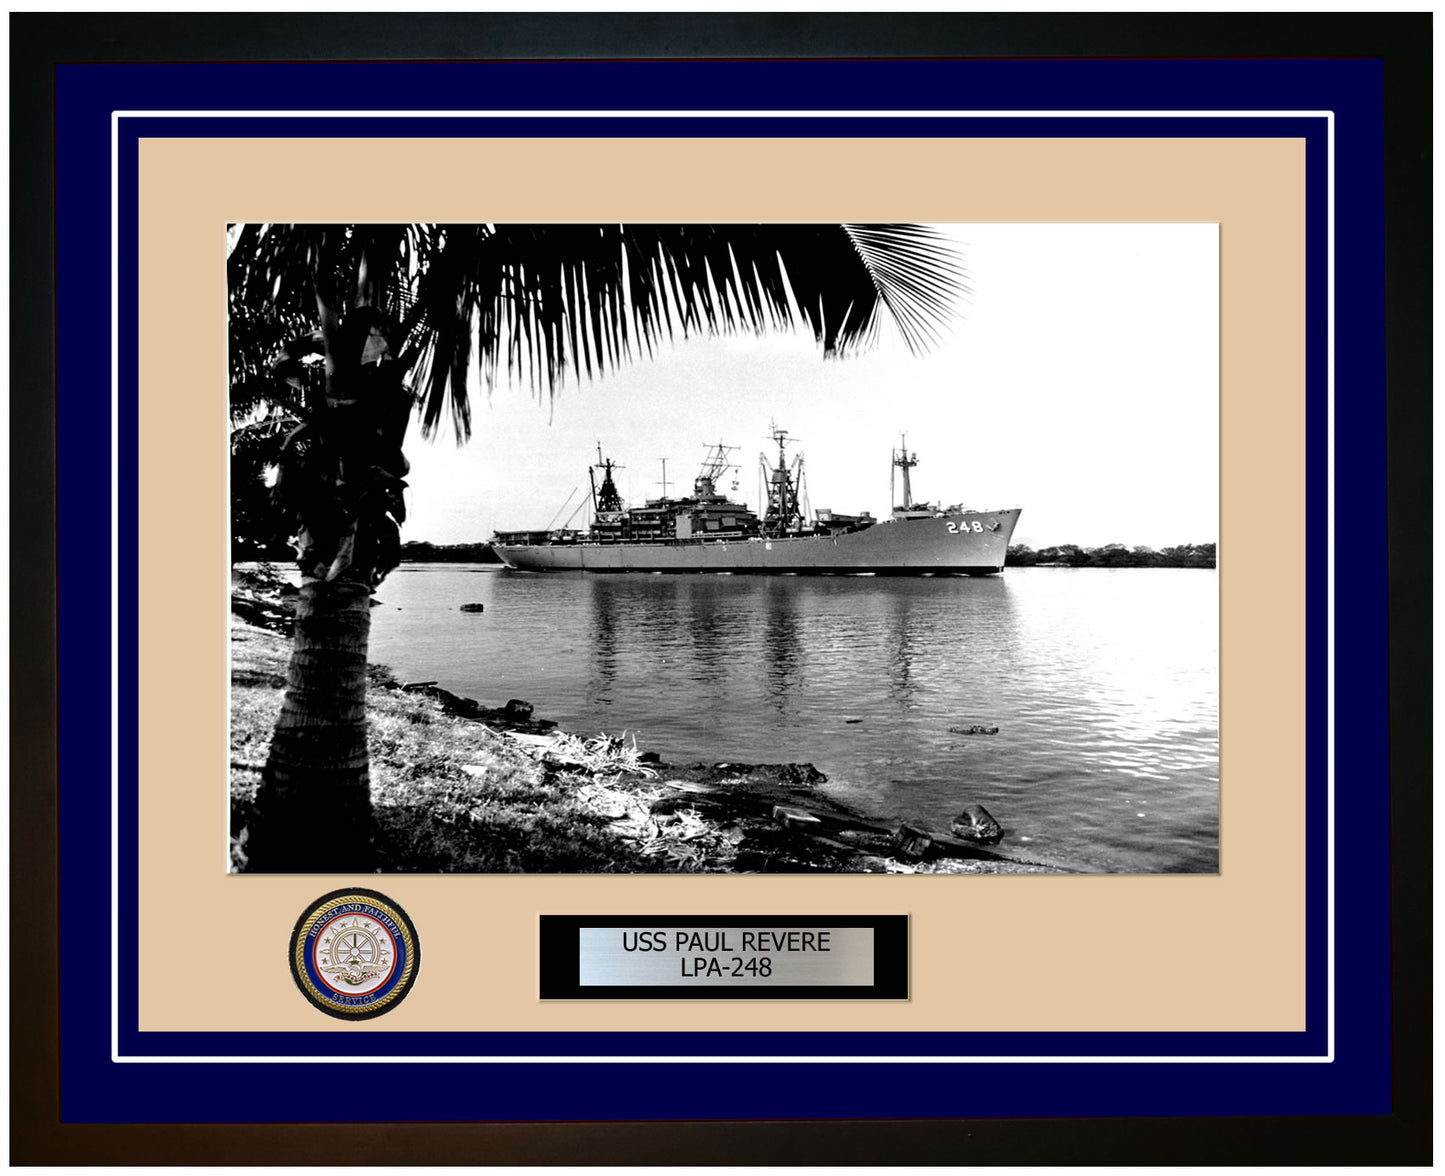 USS Paul Revere LPA-248 Framed Navy Ship Photo Blue